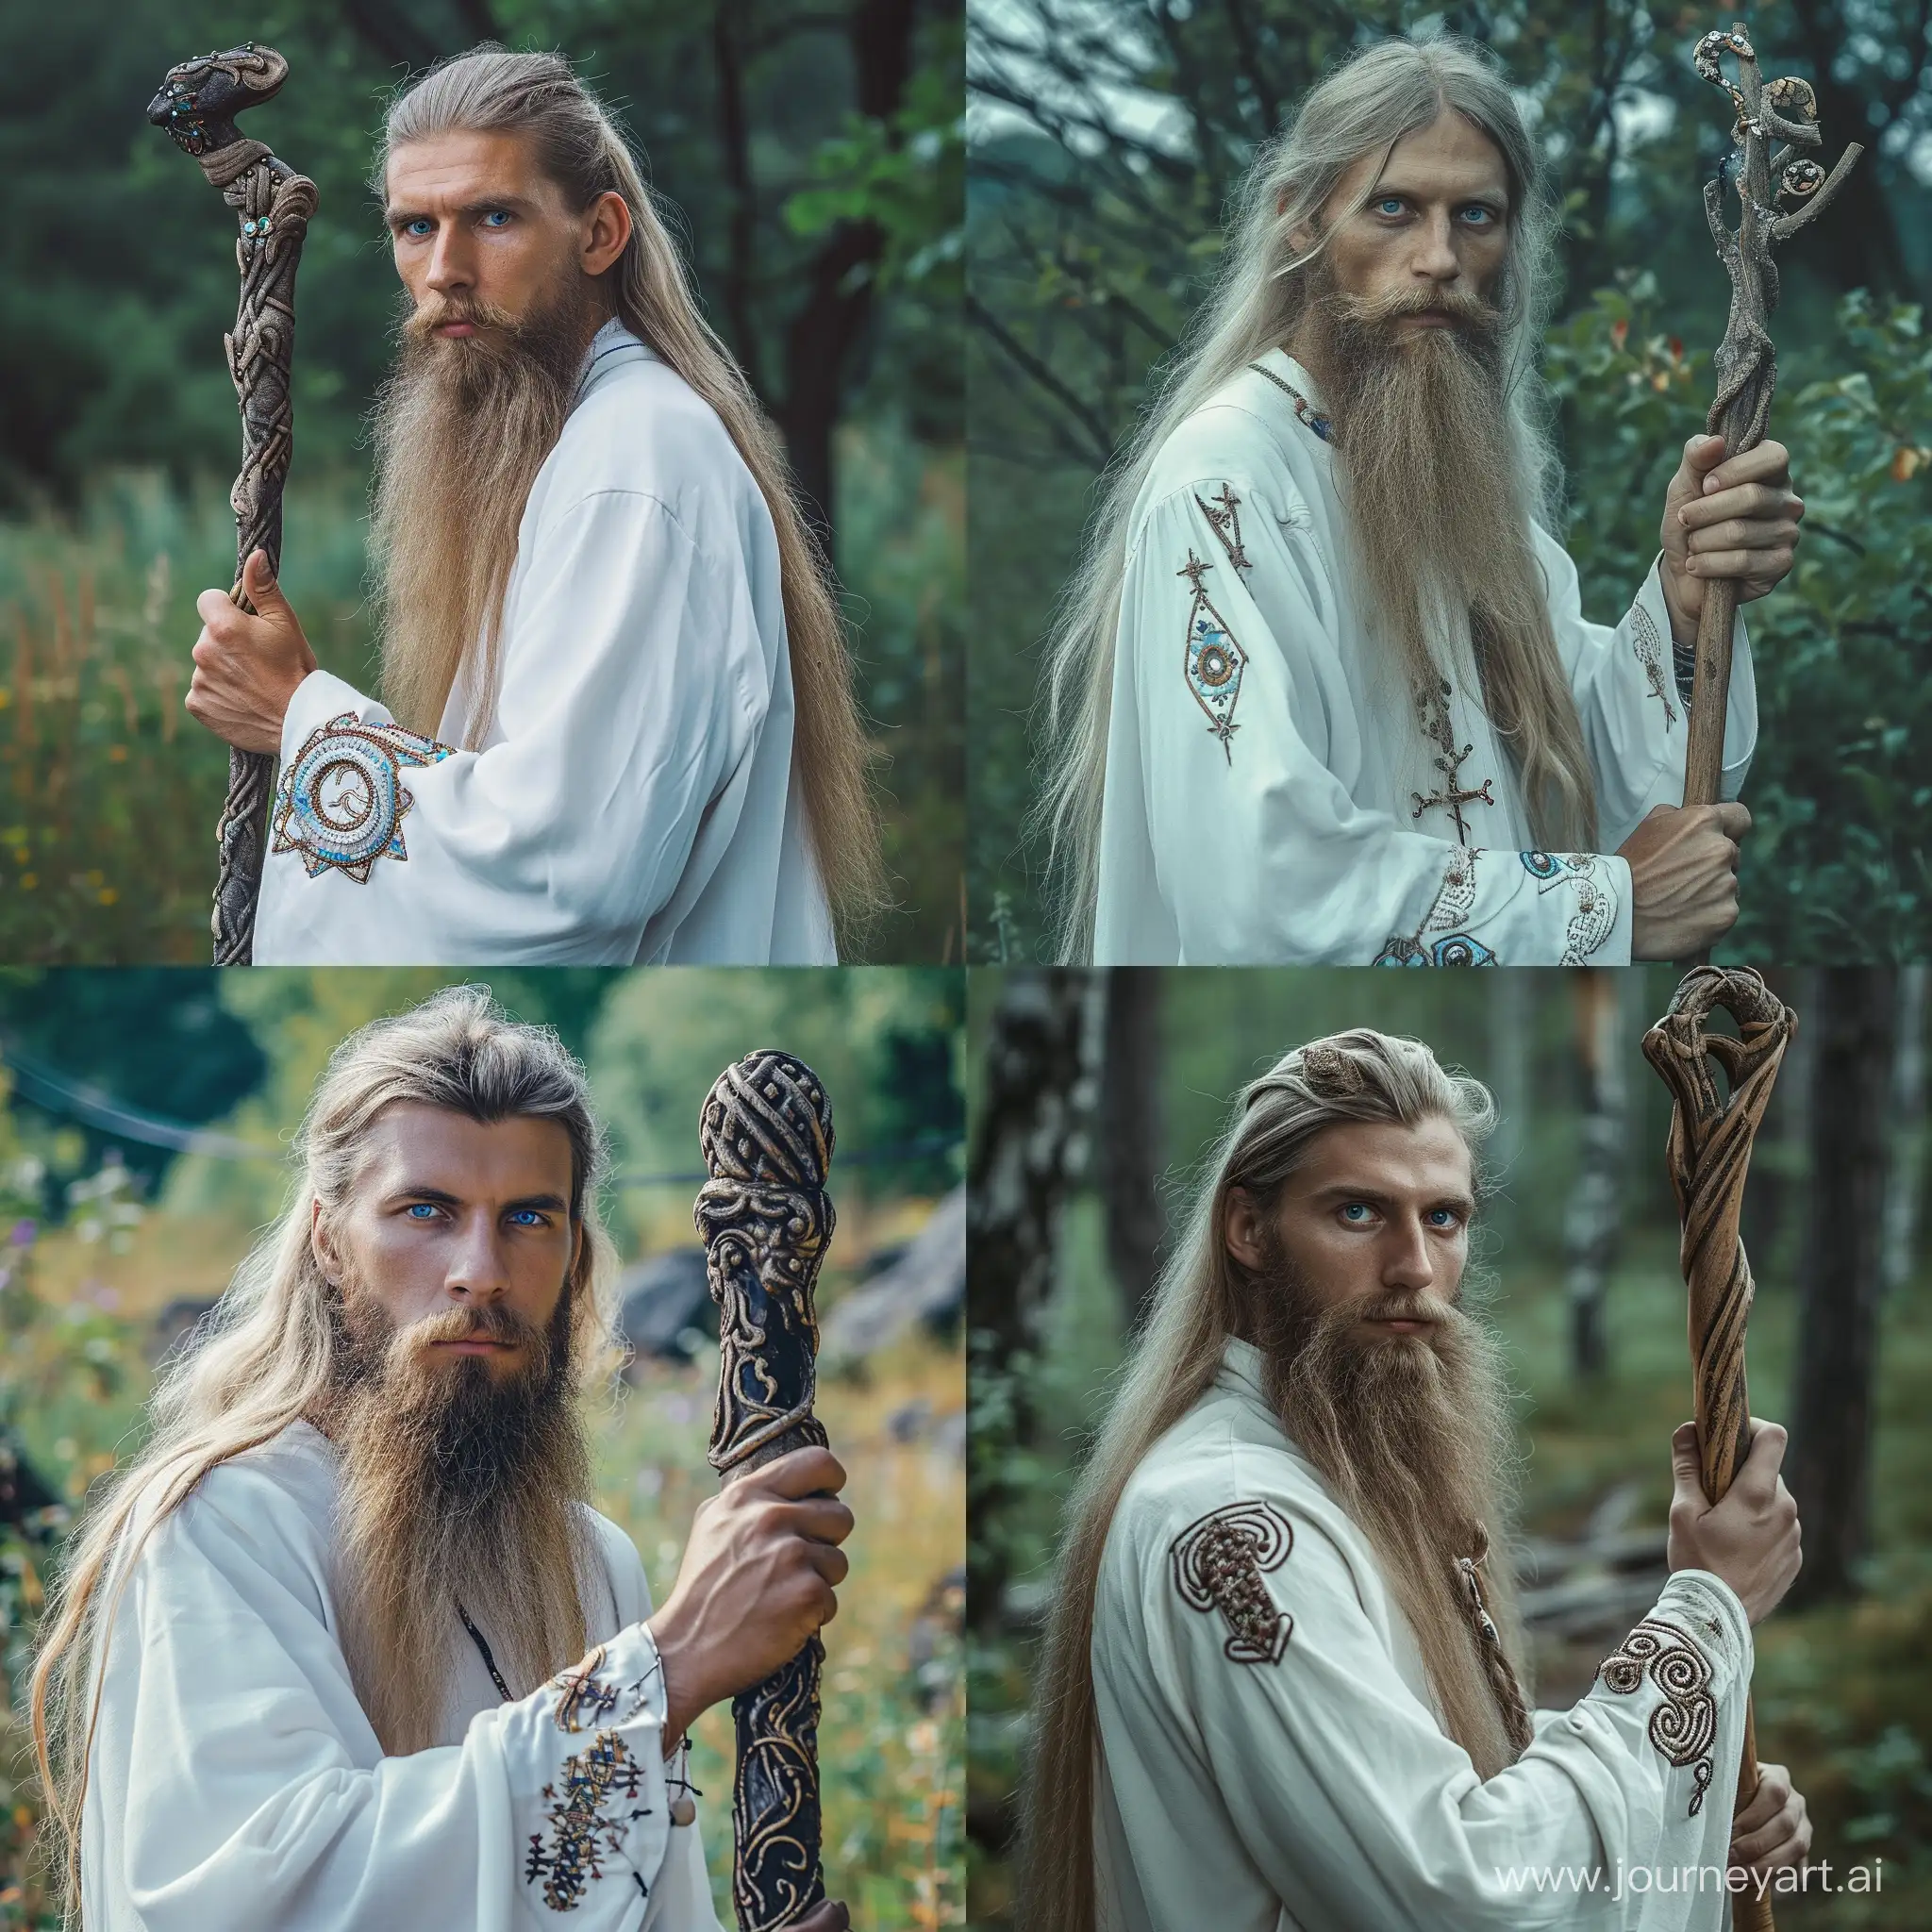 мужчина славянской внешности, длинная светлая борода и длинные волосы, глаза тёмно-голубого цвета, в руке держит посох, одет в белую одежду, необычные украшения на рукавах, на заднем фоне природа --style raw